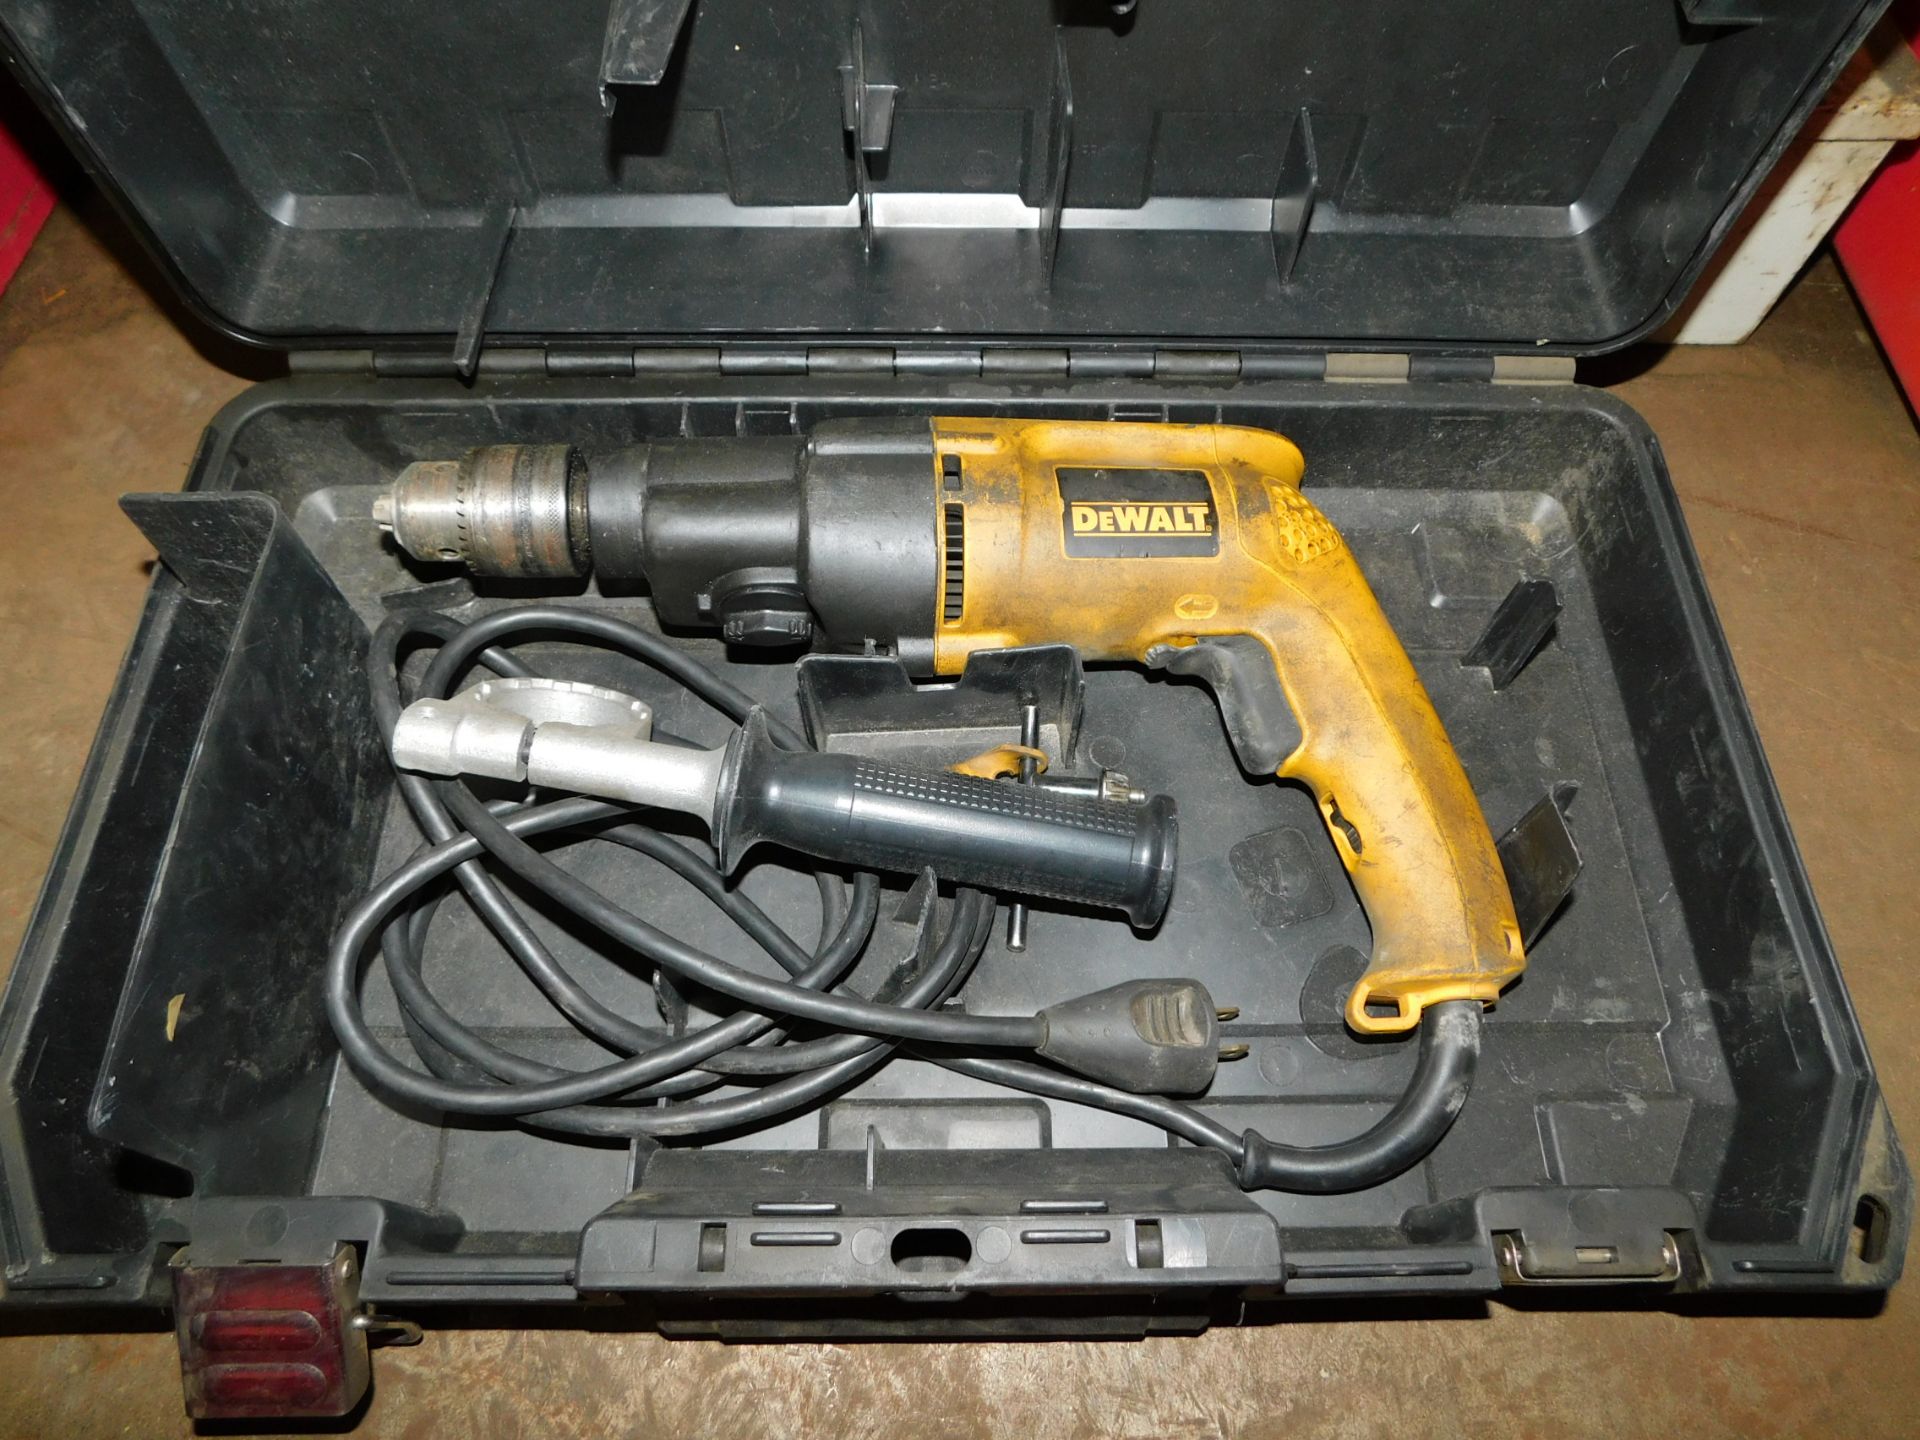 Dewalt DW 505 Hammer Drill with Case, 1/2" cap.